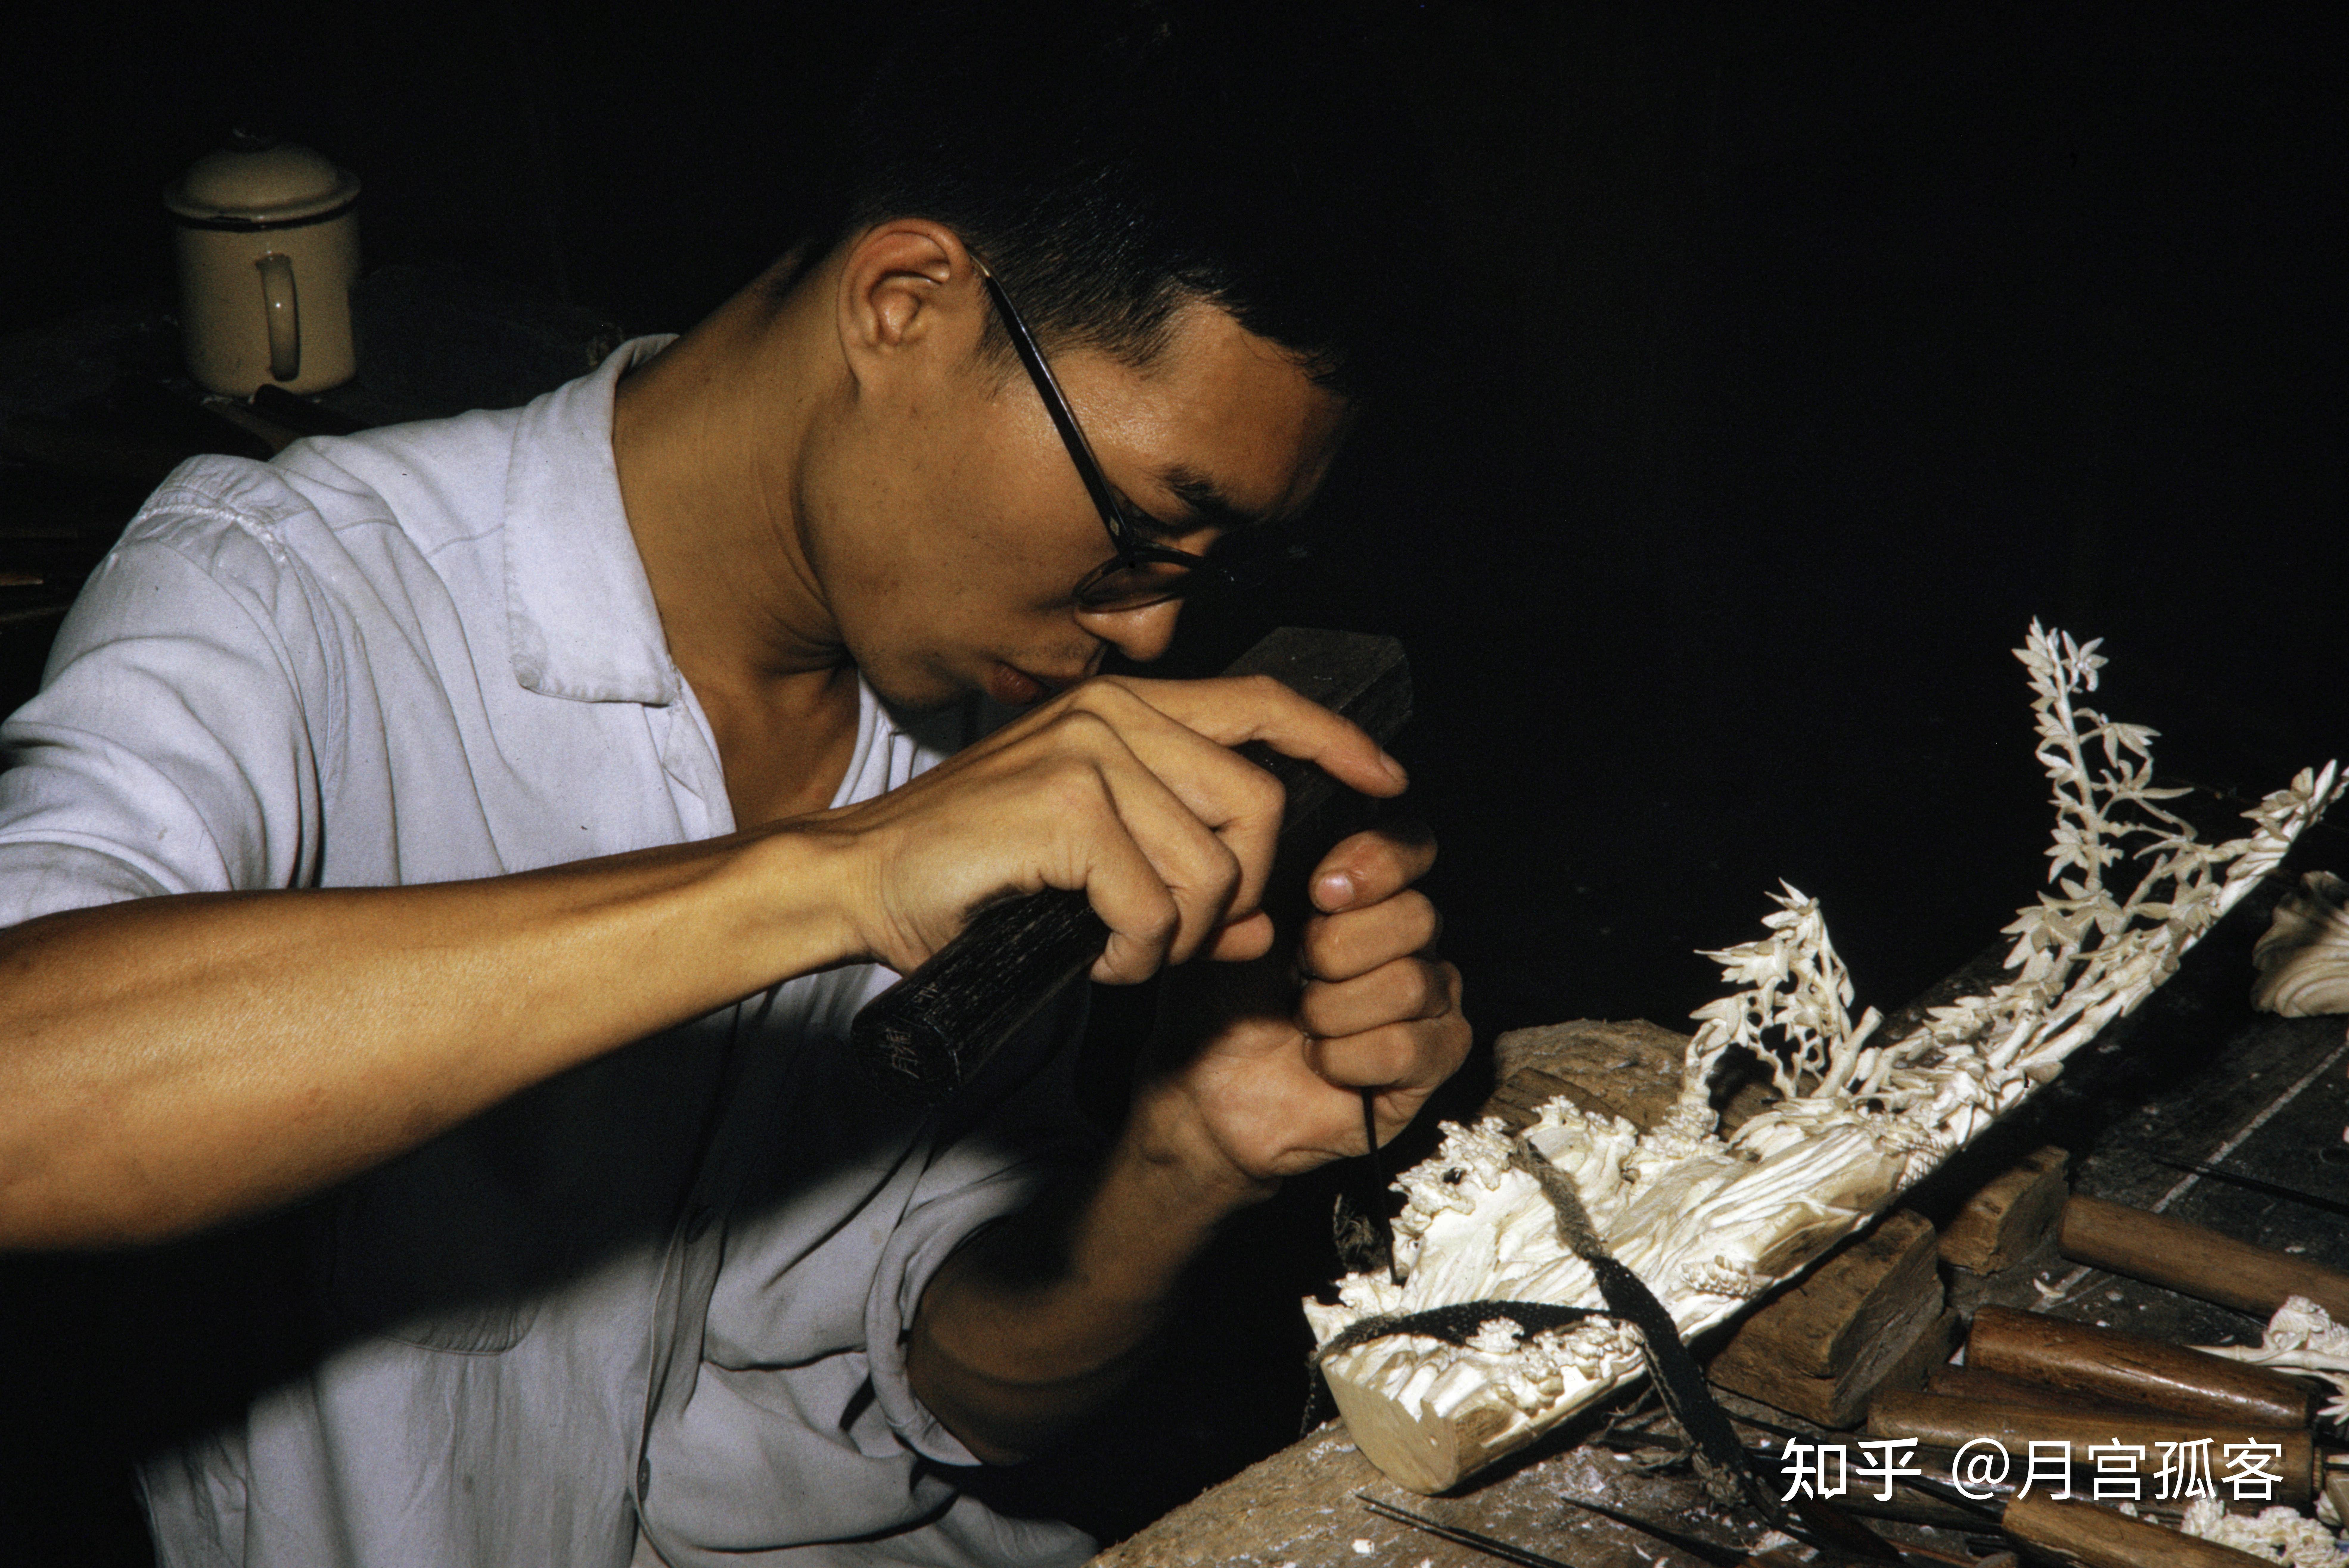 1973年广州大新象牙工艺厂走向巅峰时期的雕刻工艺师